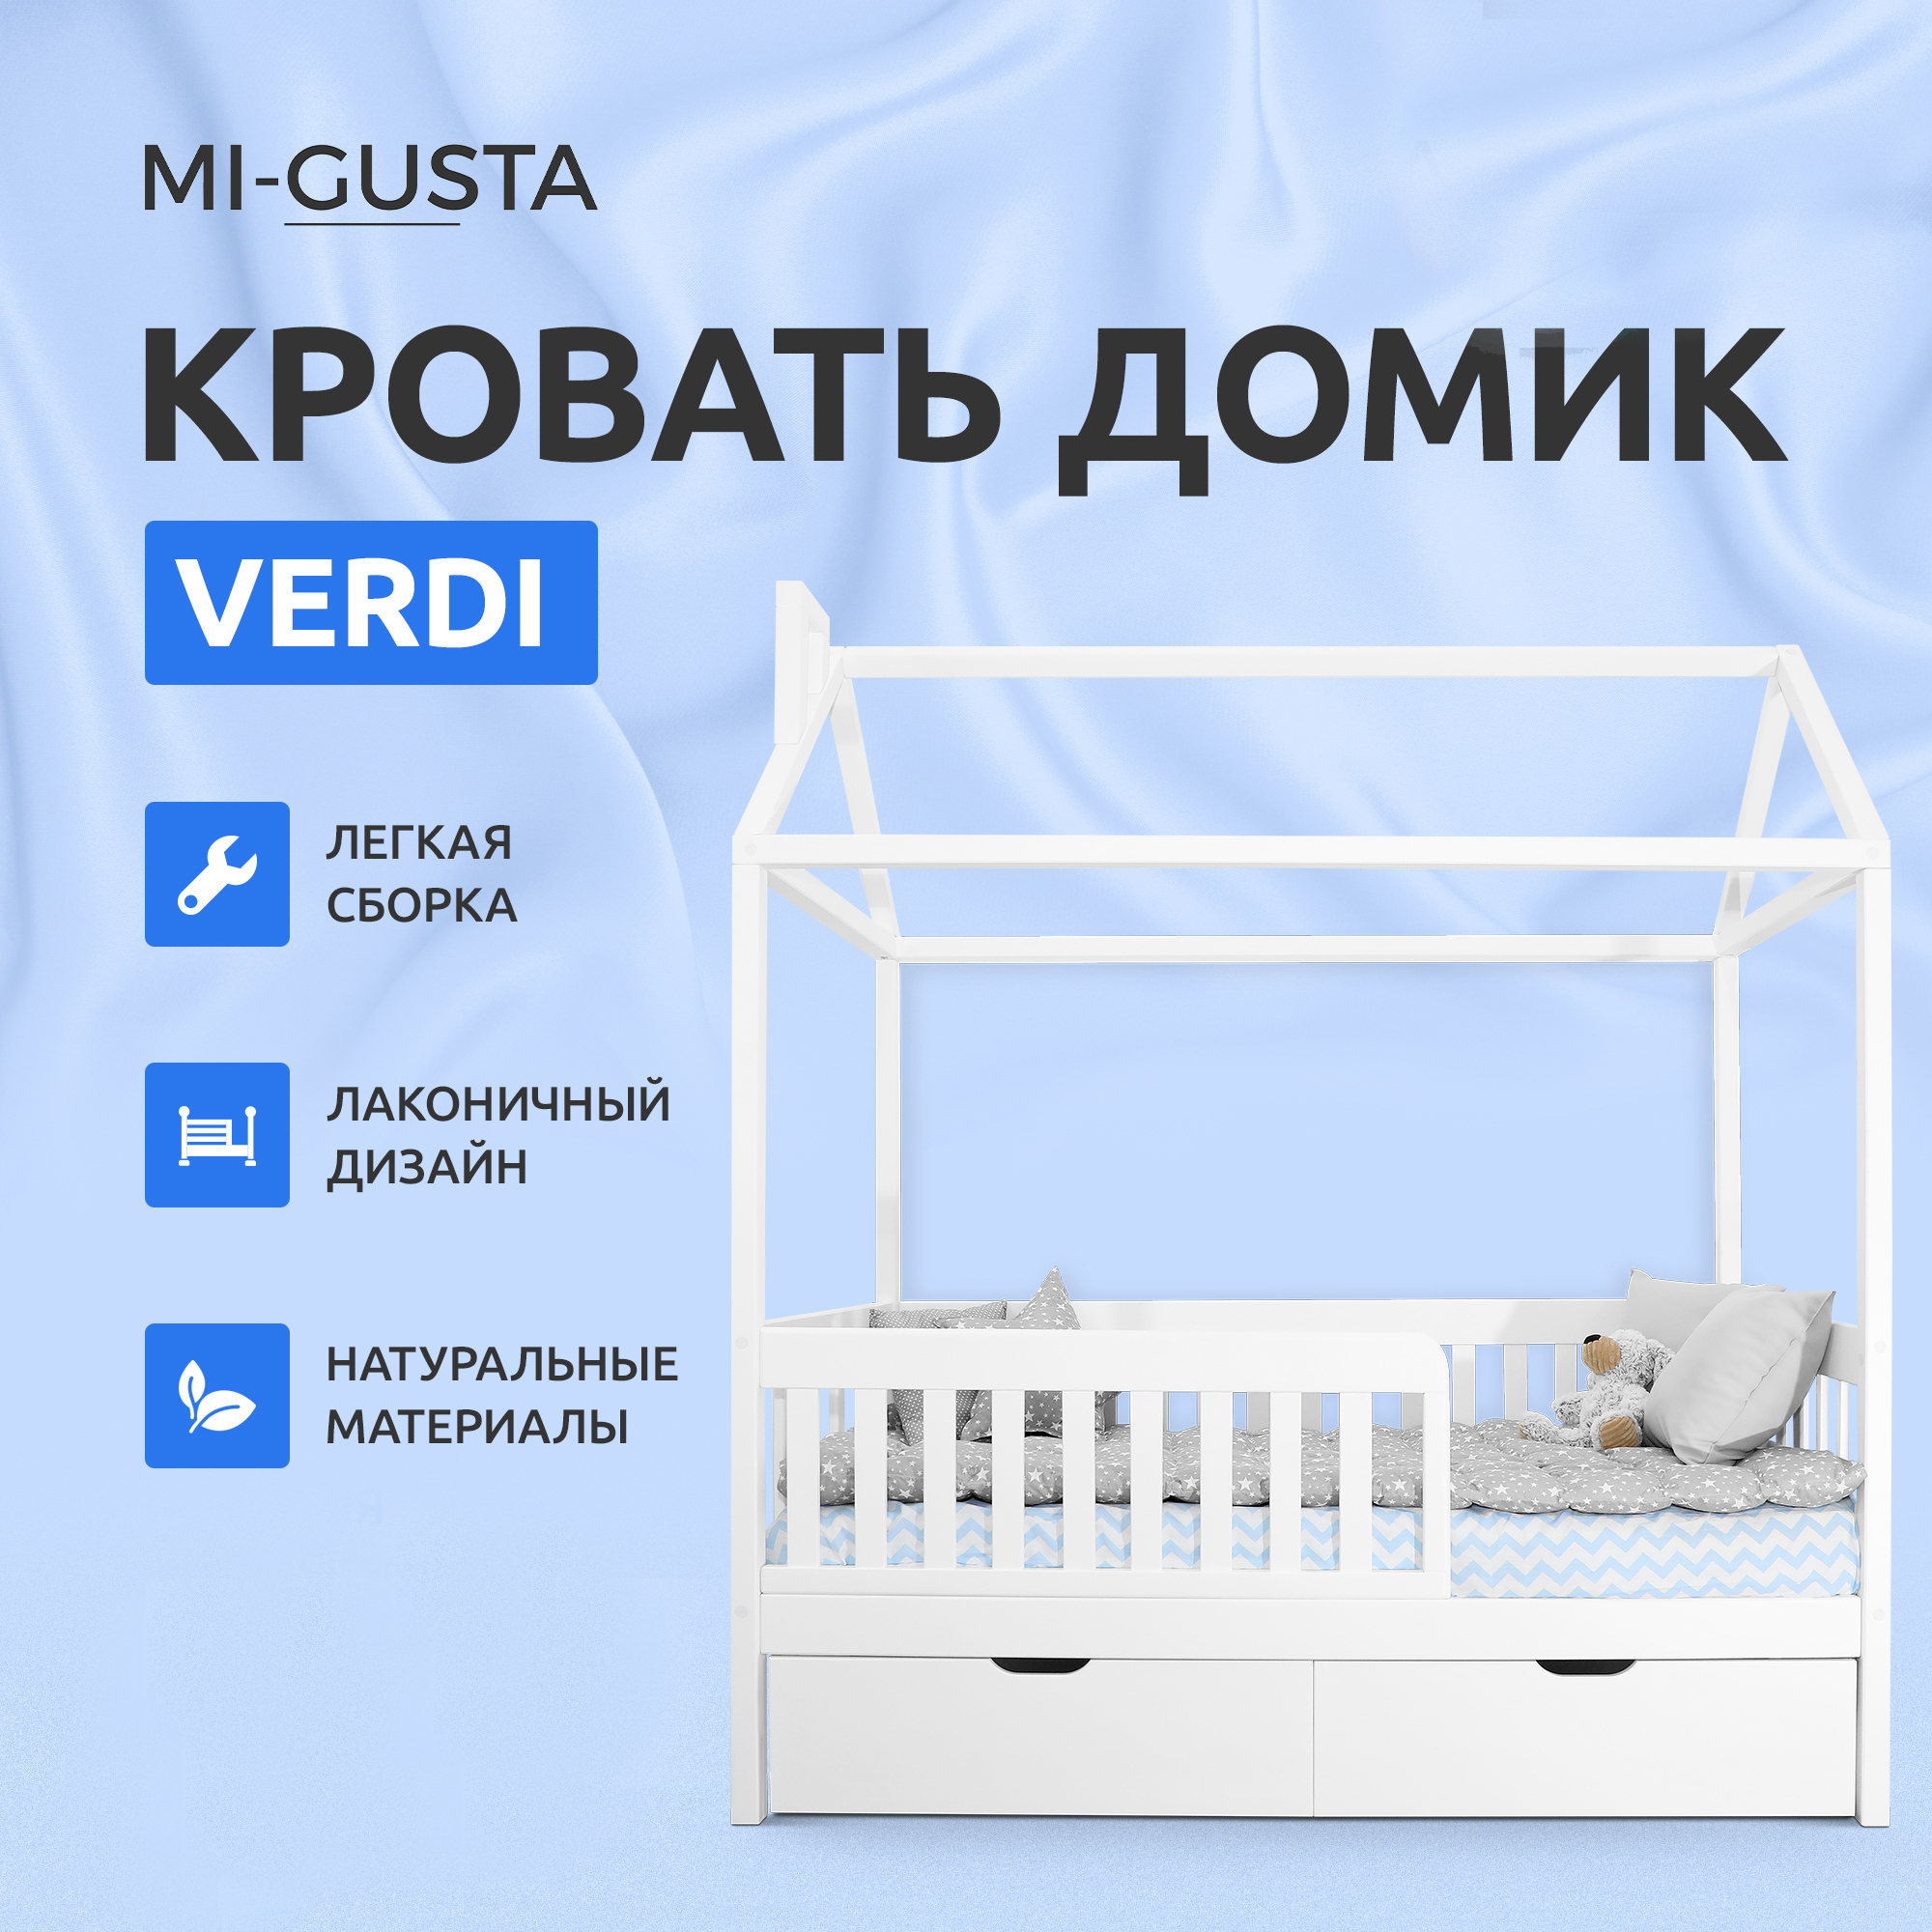 Детская кровать Mi-Gusta Verdi, 189x69x89, из массива берёзы, белая, без ящиков